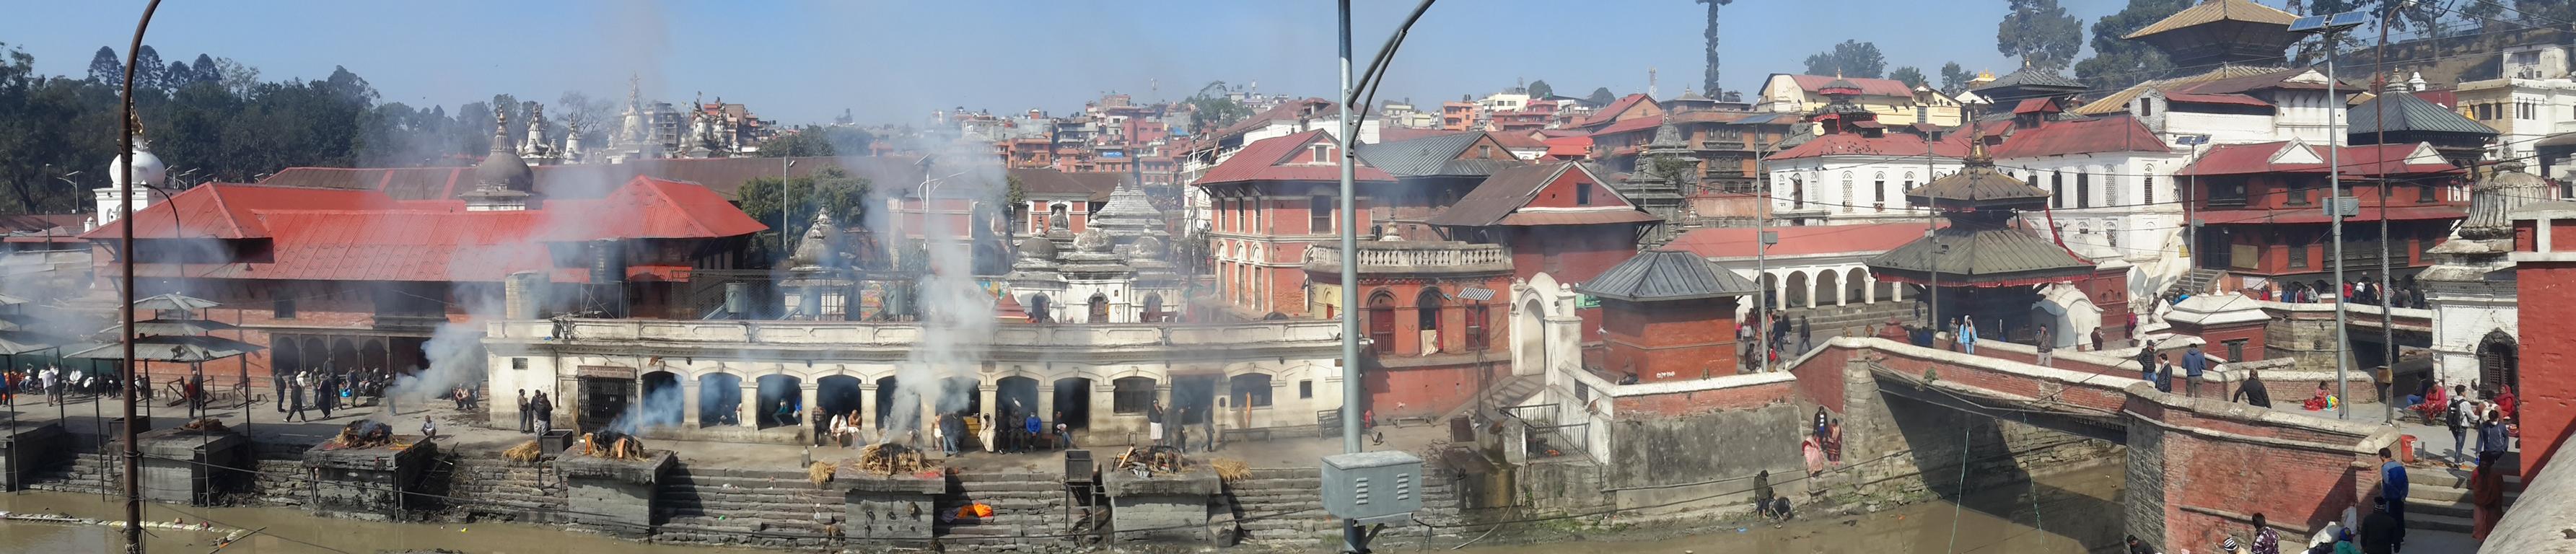 Von weitem schon sieht man den Rauch der brennenden Toten. Meterhohe Schwaden über den Feuerstätten an den Ufern des heiligen Flusses Bagmati bahnen sich ihren Weg zum Himmel.